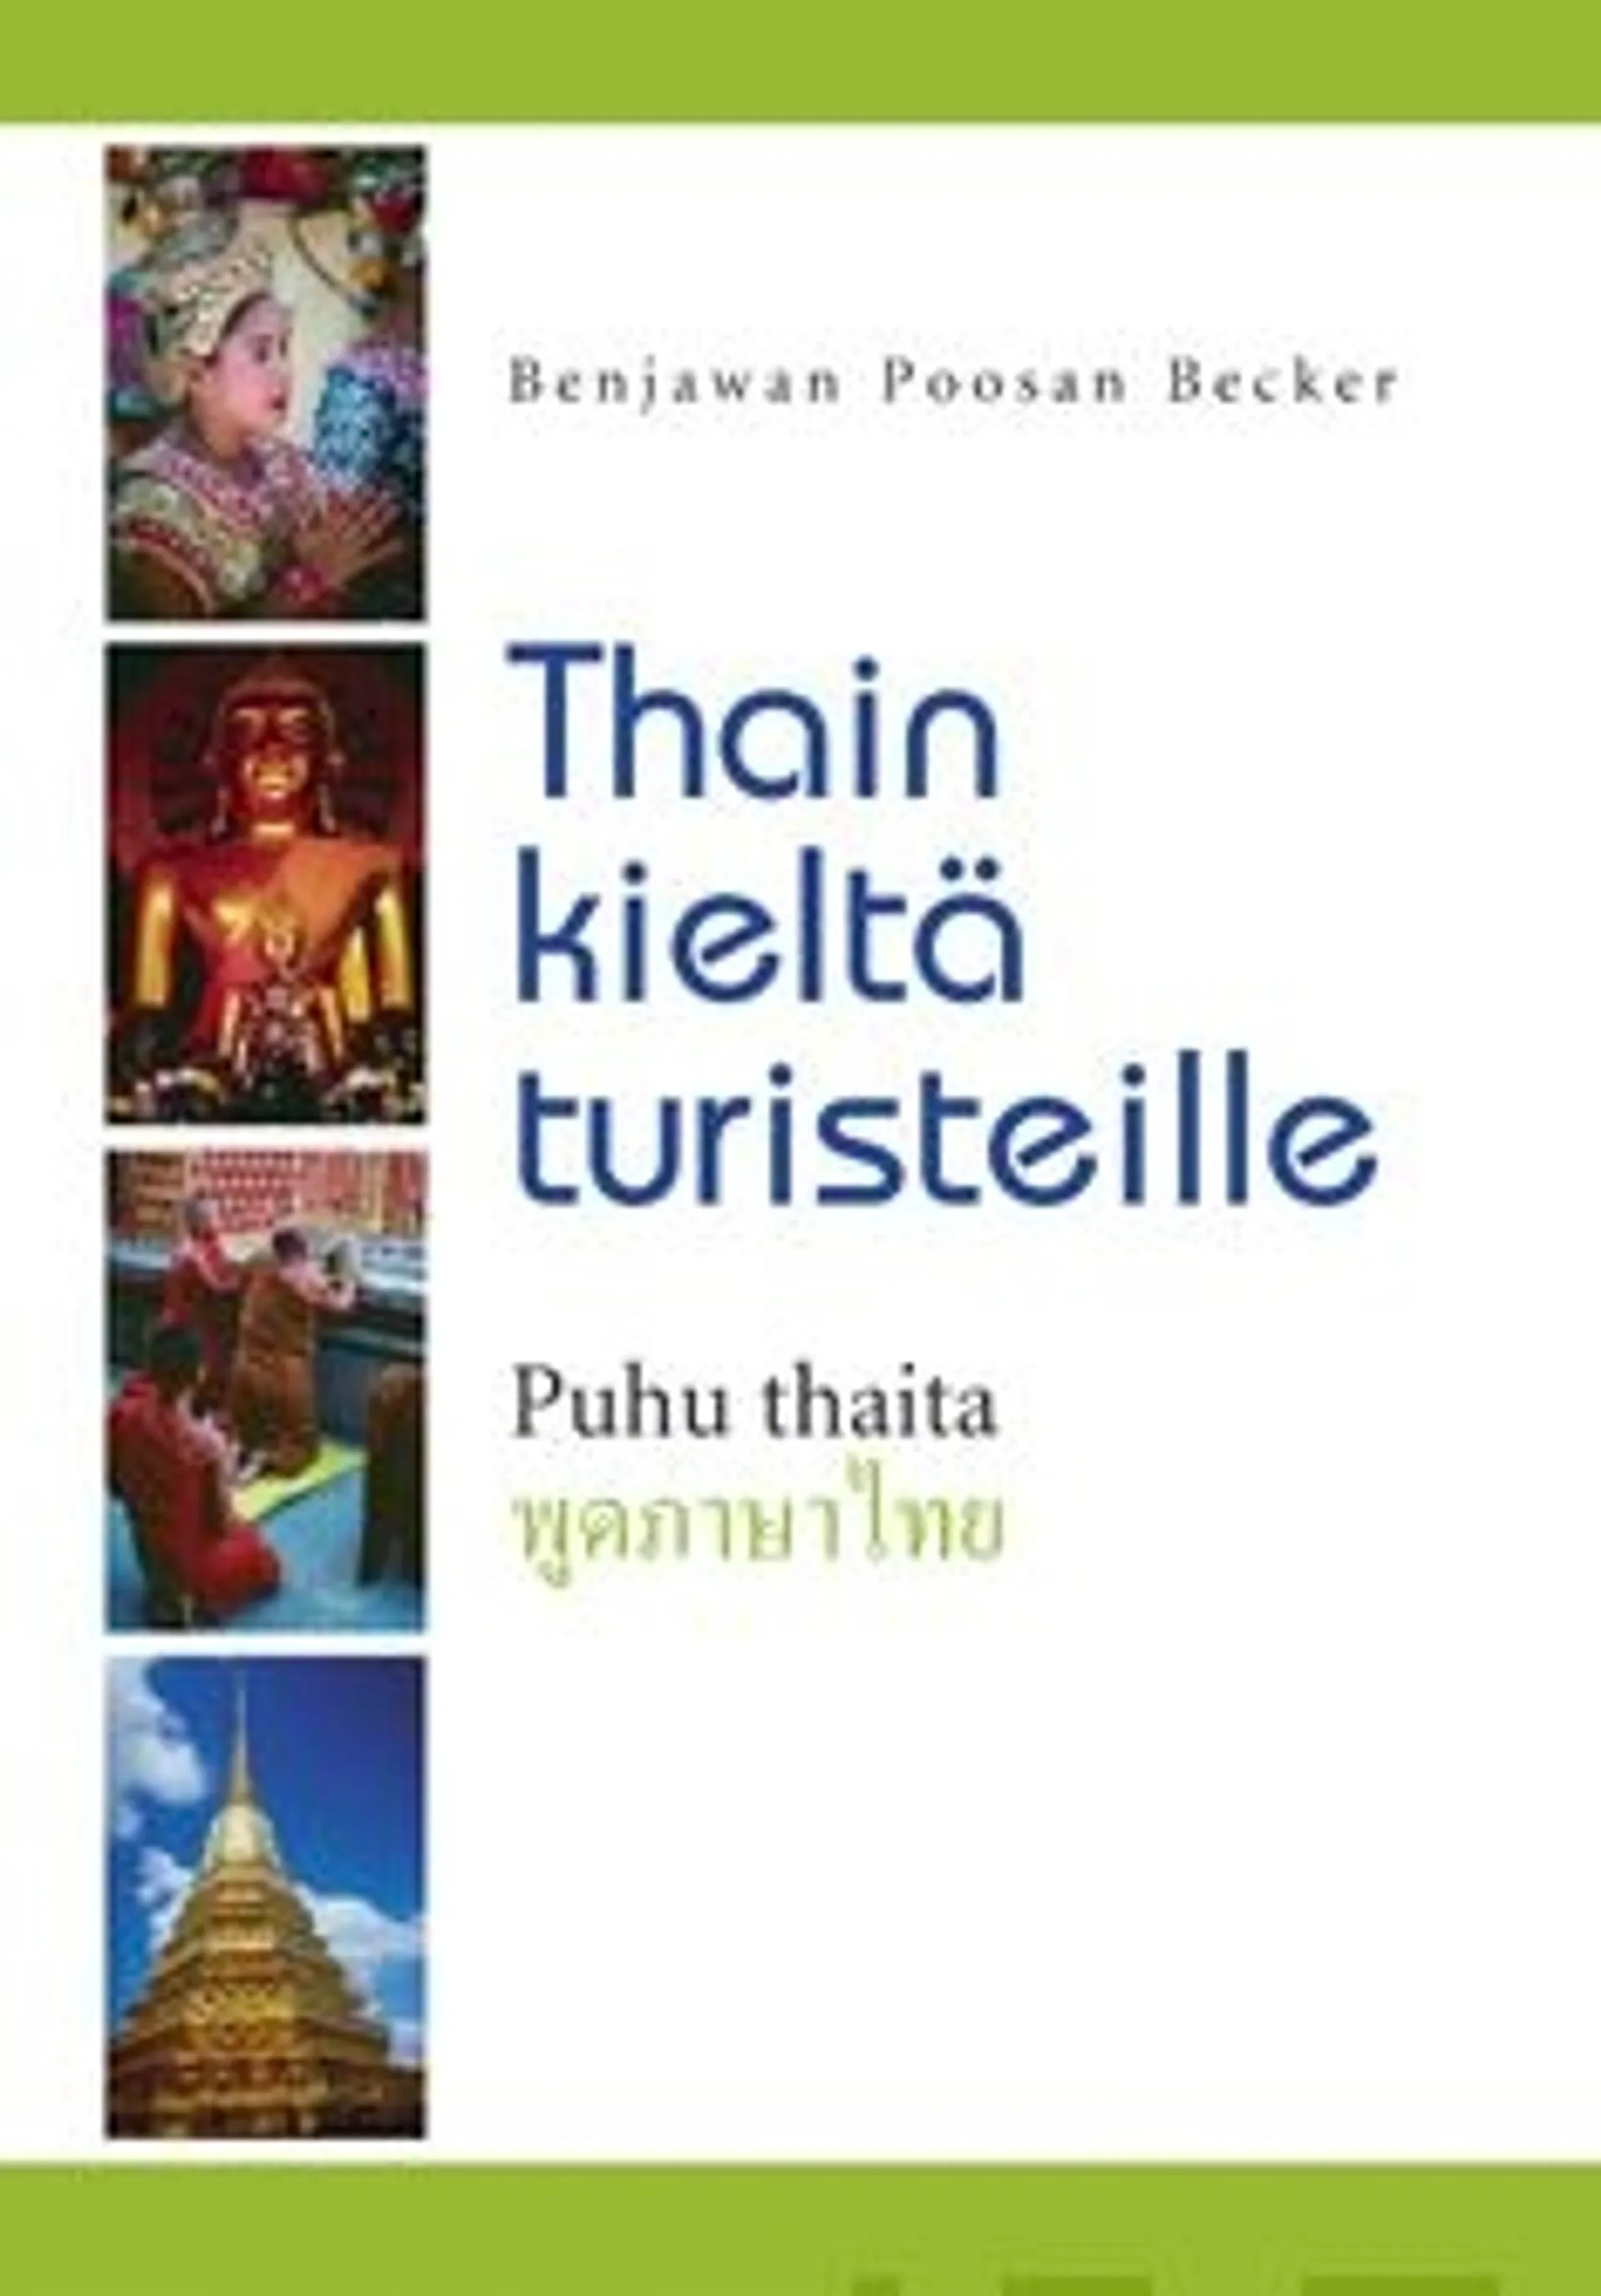 Becker, Thain kieltä turisteille (+cd)